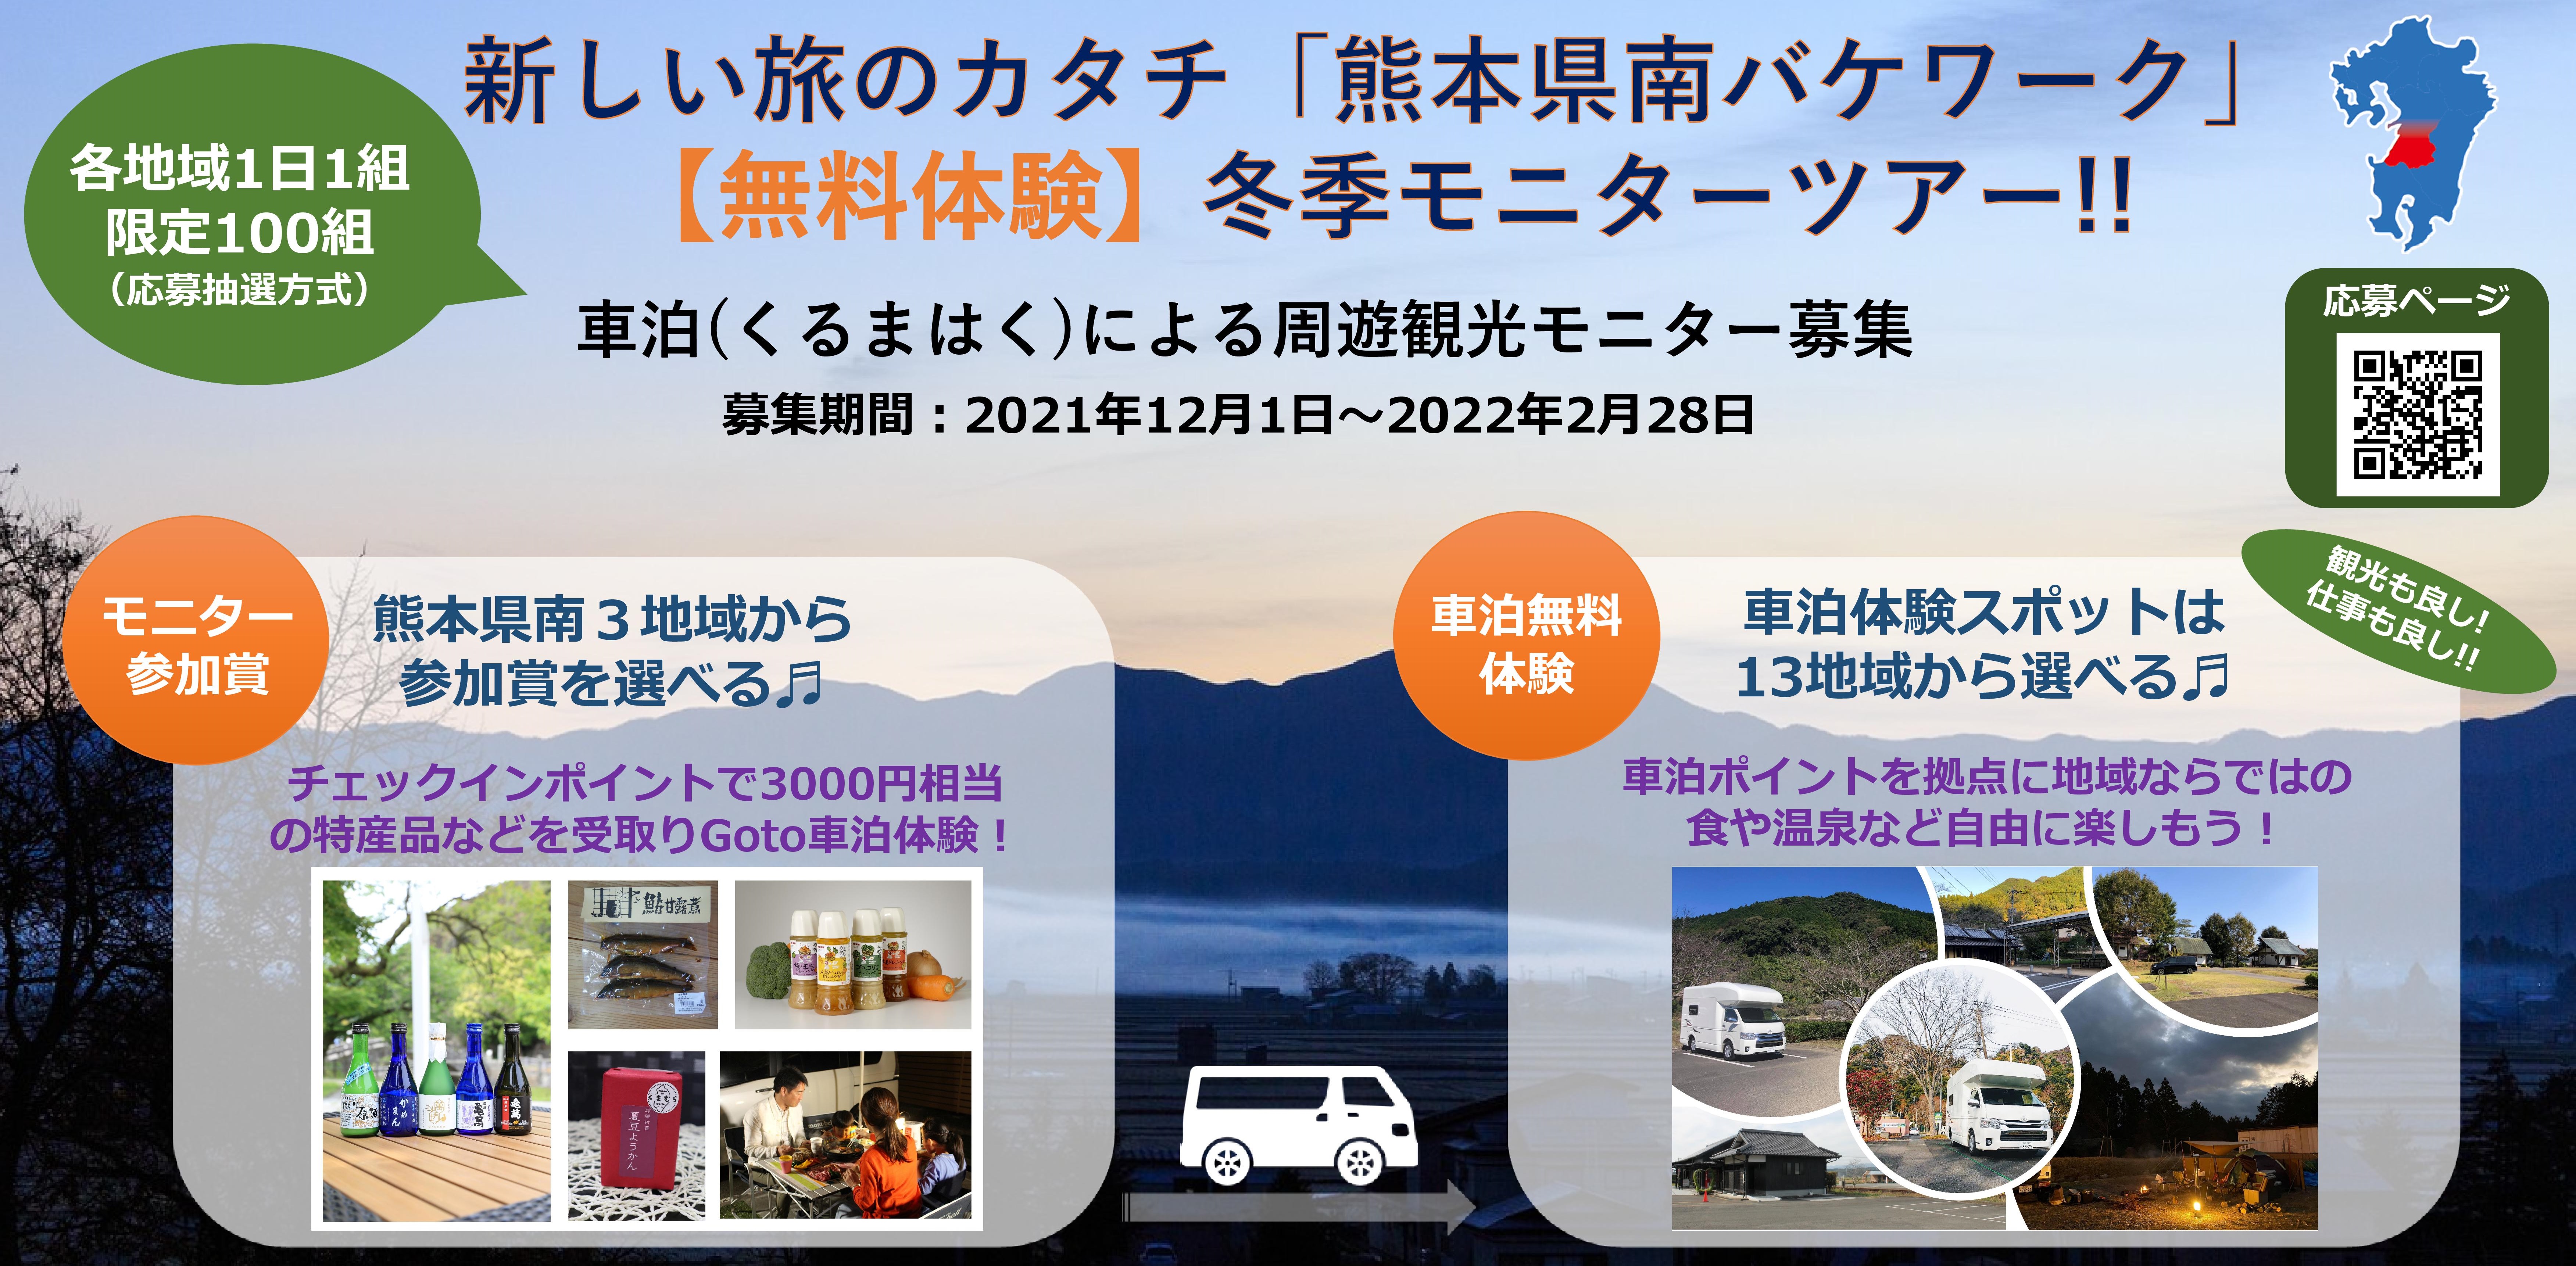 観光 仕事はノー密に 熊本県南バケワーク 冬季モニターツアー開始 トラストパークのプレスリリース